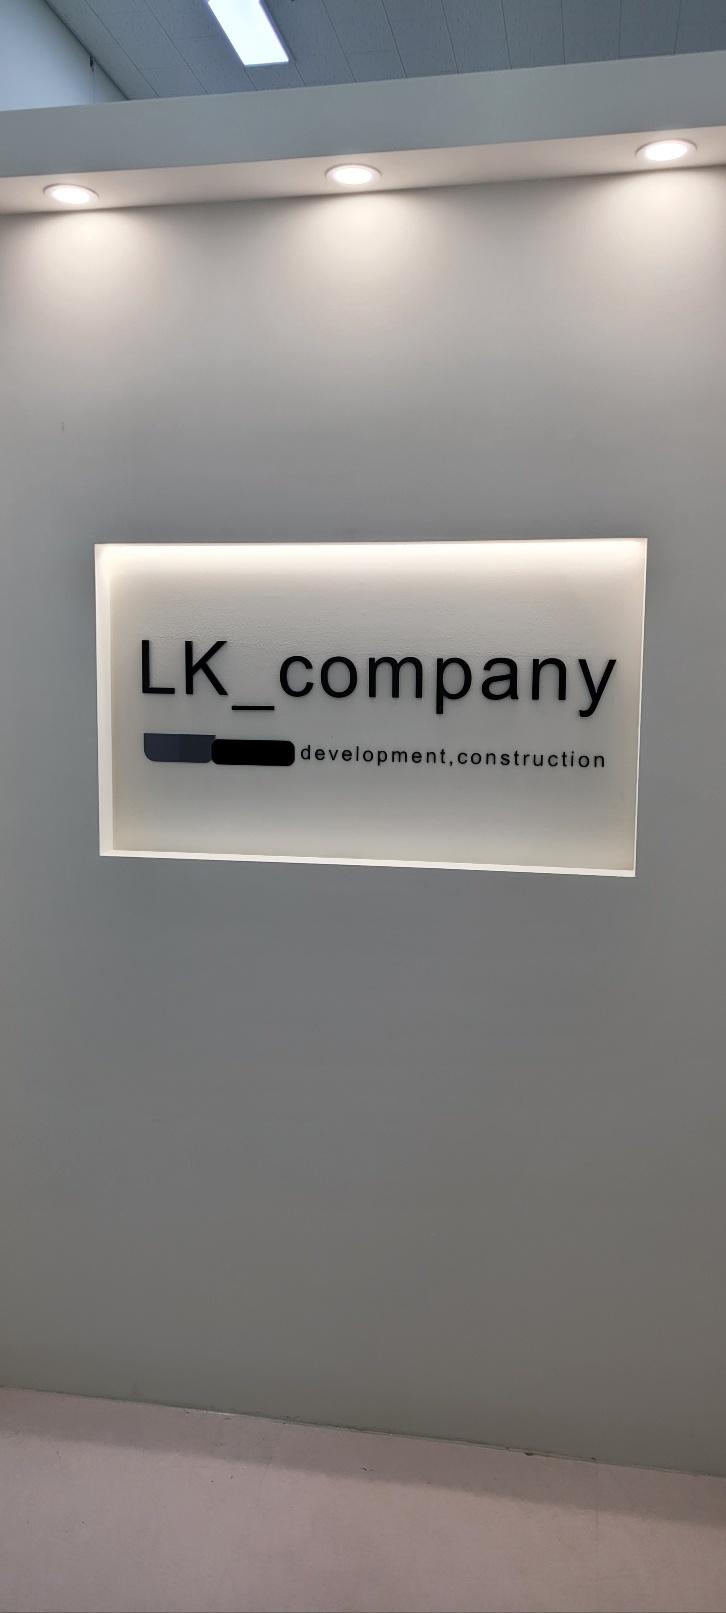 회사 로고